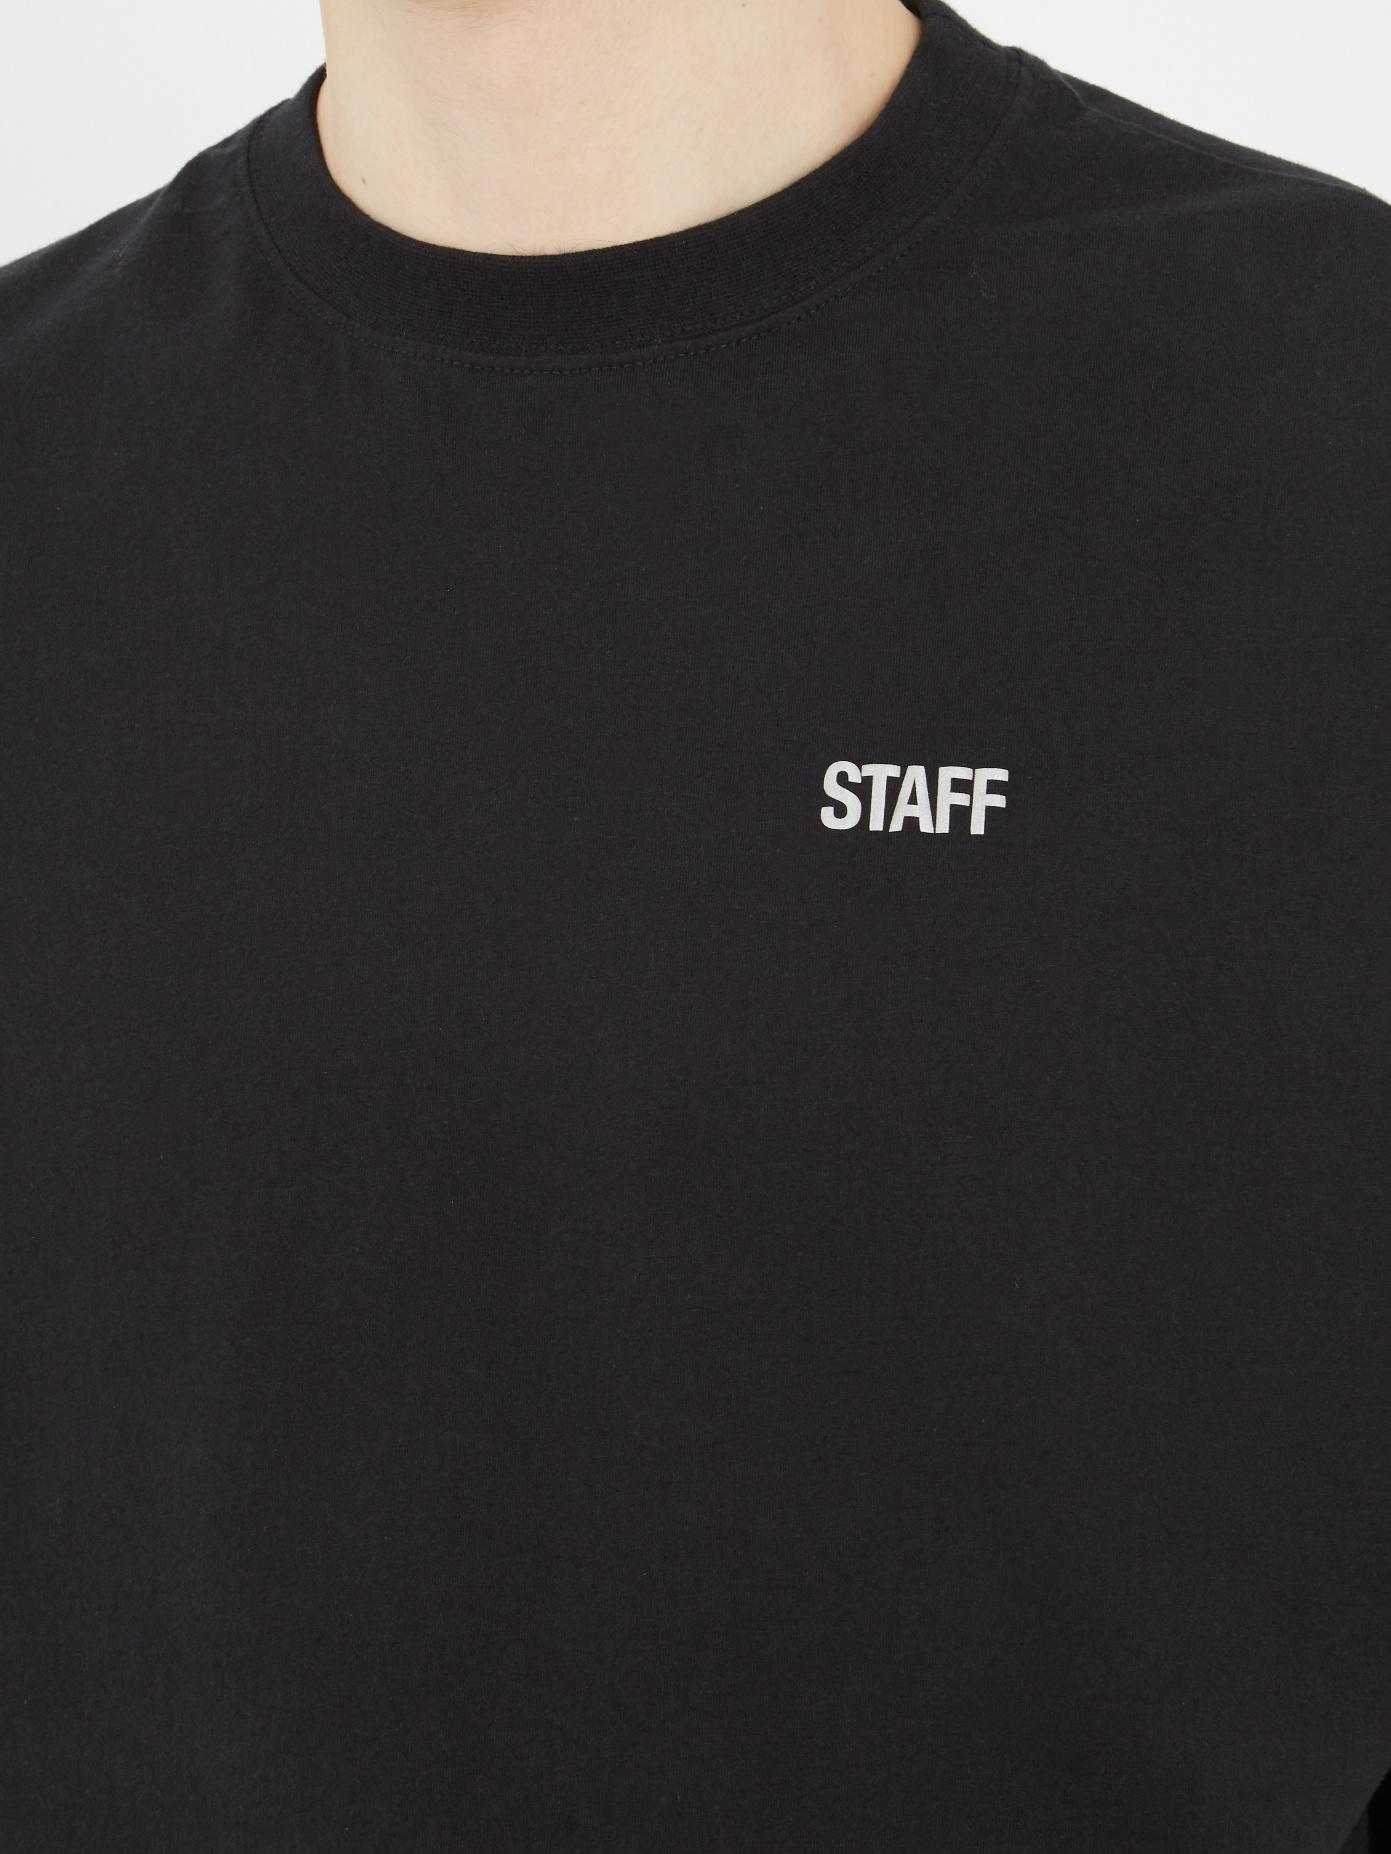 ブラック系,M【大特価!!】VETEMENTS staff Tシャツ Tシャツ/カットソー 